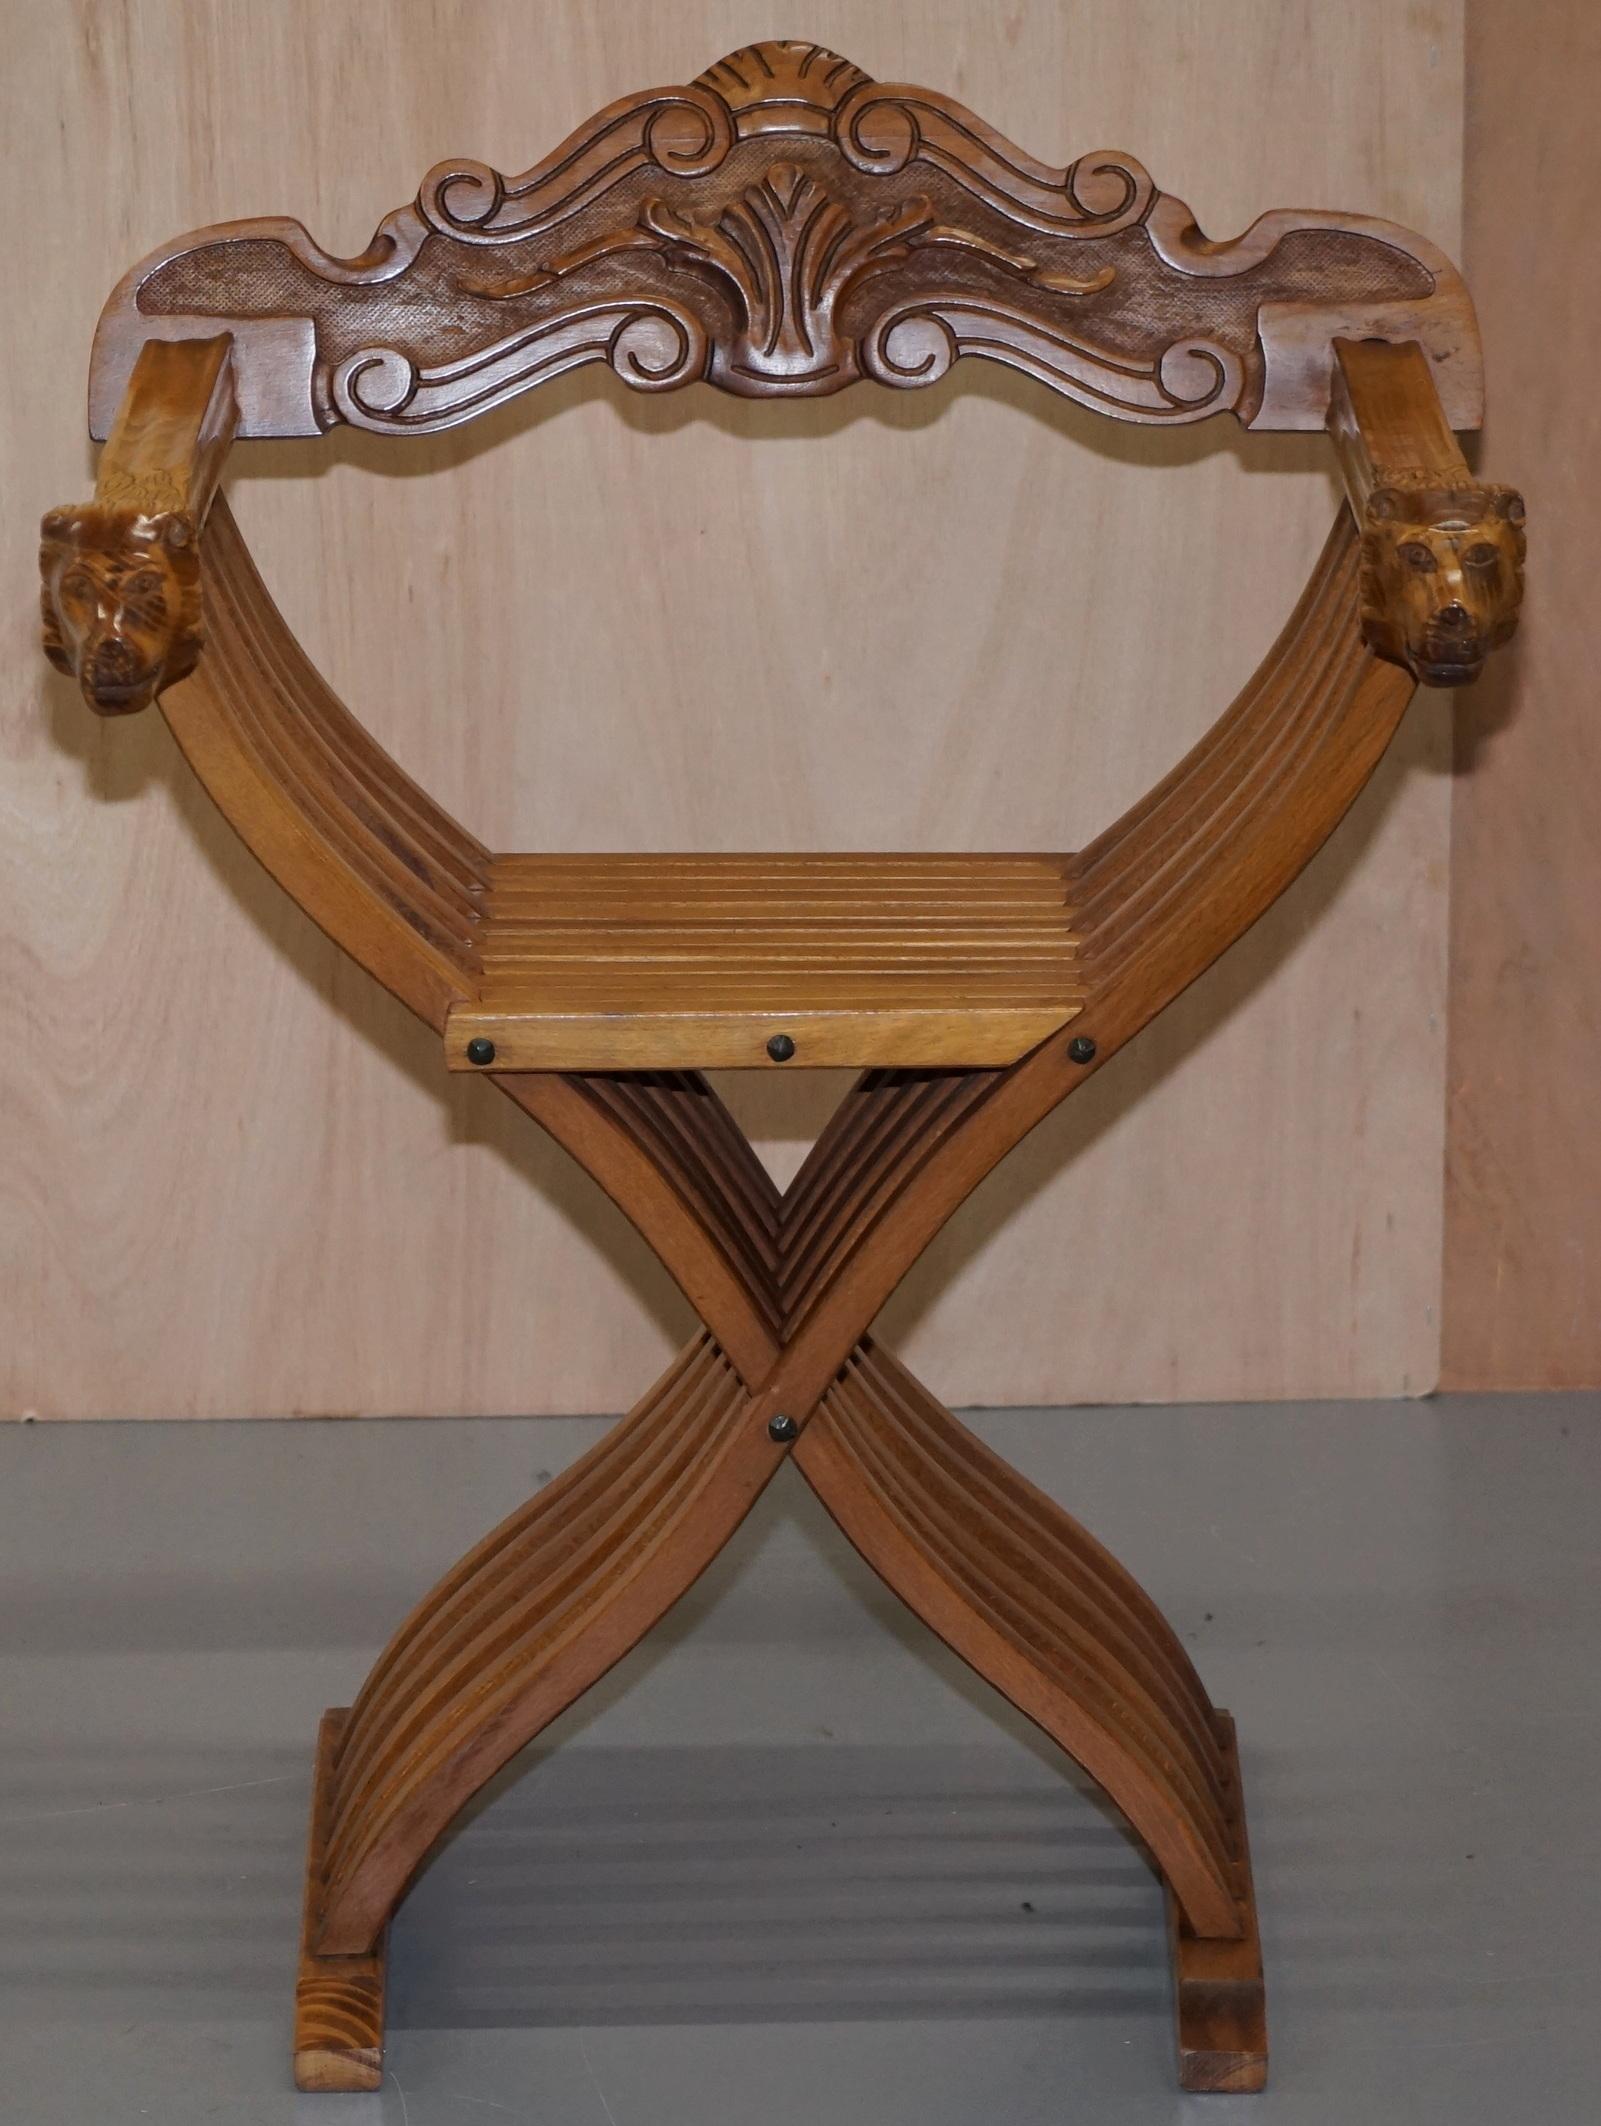 Nous avons le plaisir de proposer à la vente l'un des deux fauteuils Savonarola.

J'ai une paire, cette enchère est pour la chaise avec des bras en forme de tête de lion, l'autre chaise qui est listée dans mes autres articles a des bras arrondis